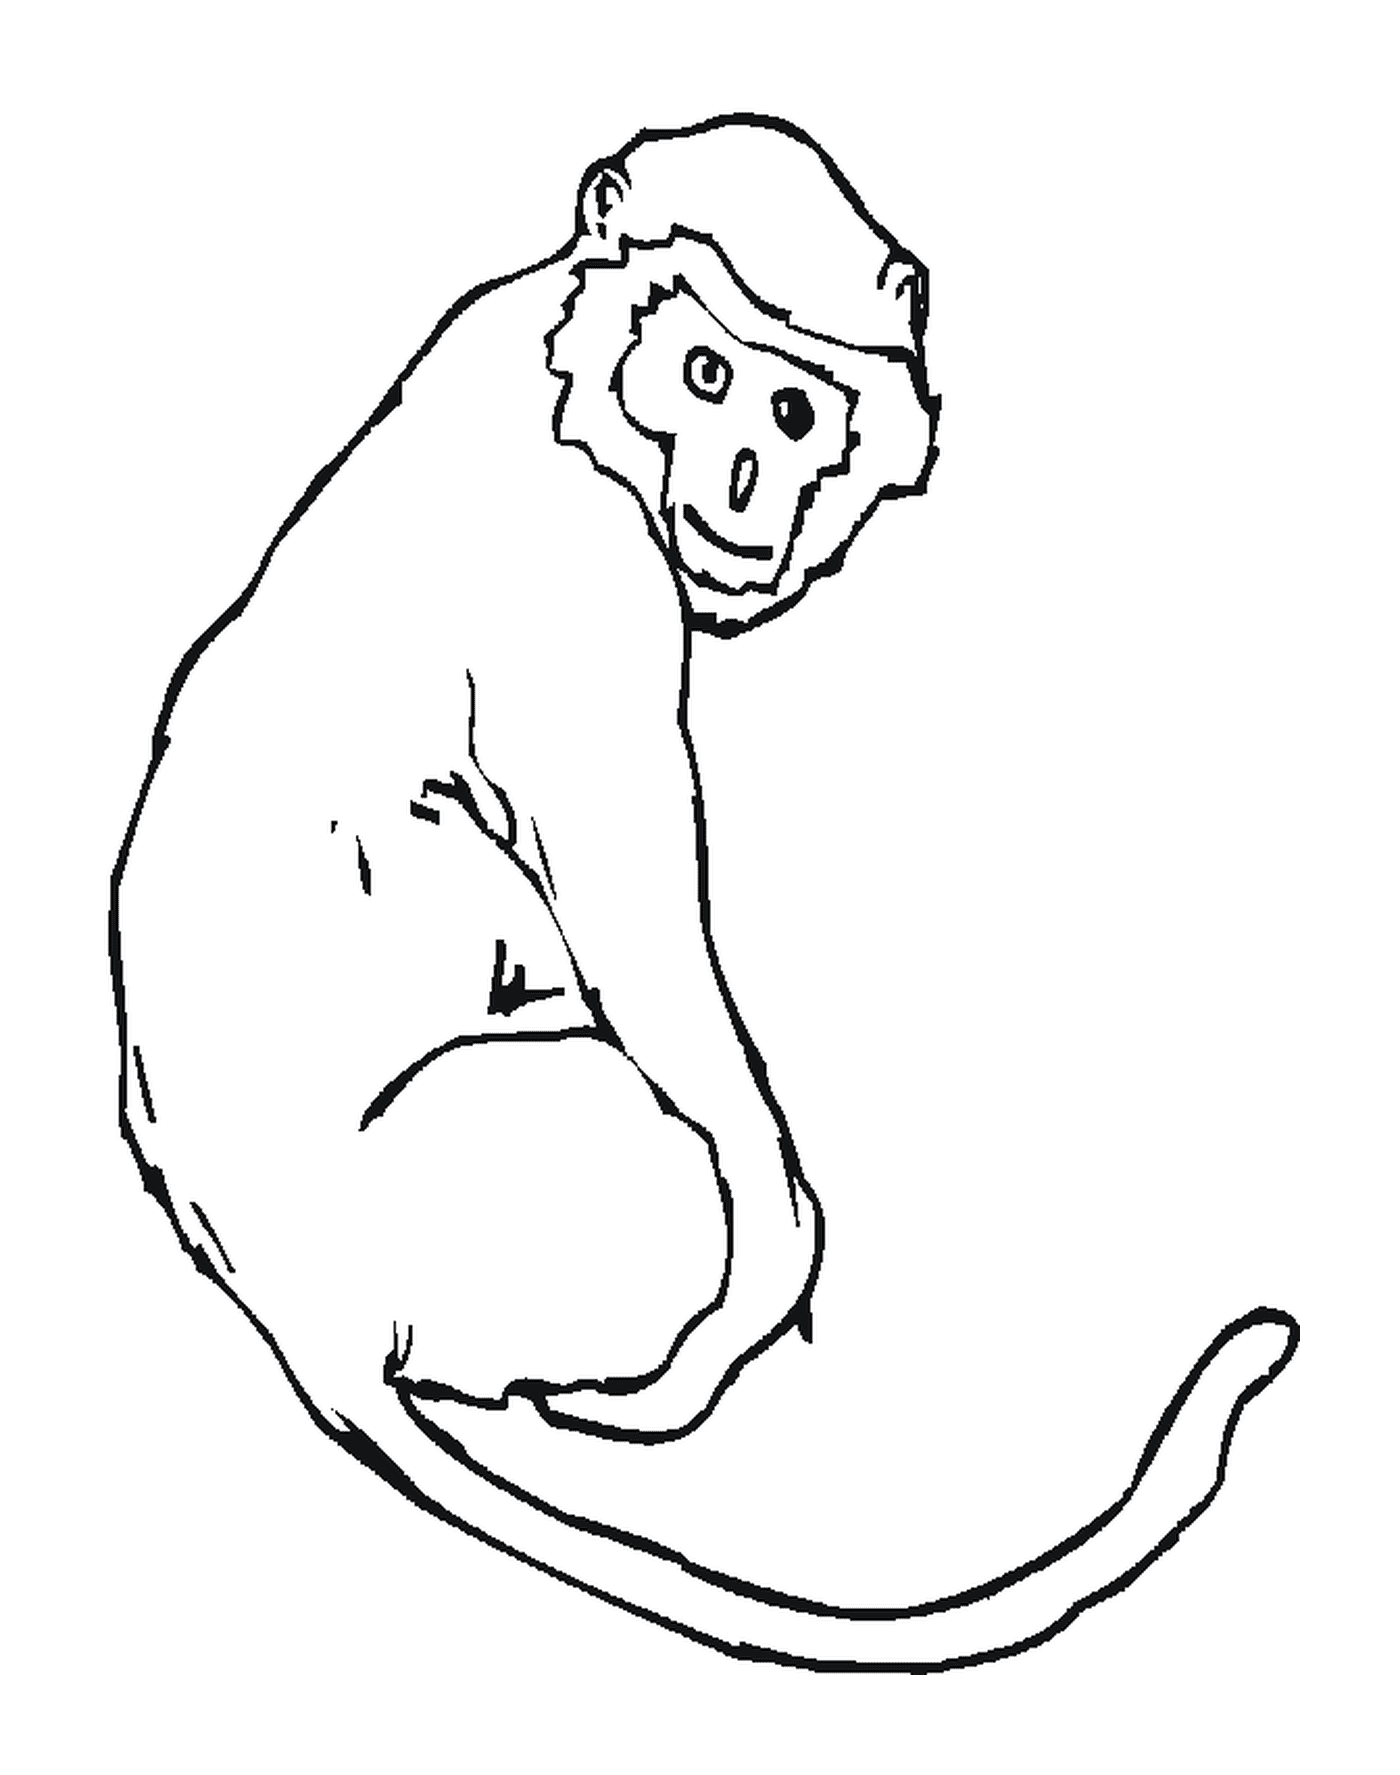 Un singe avec sa queue